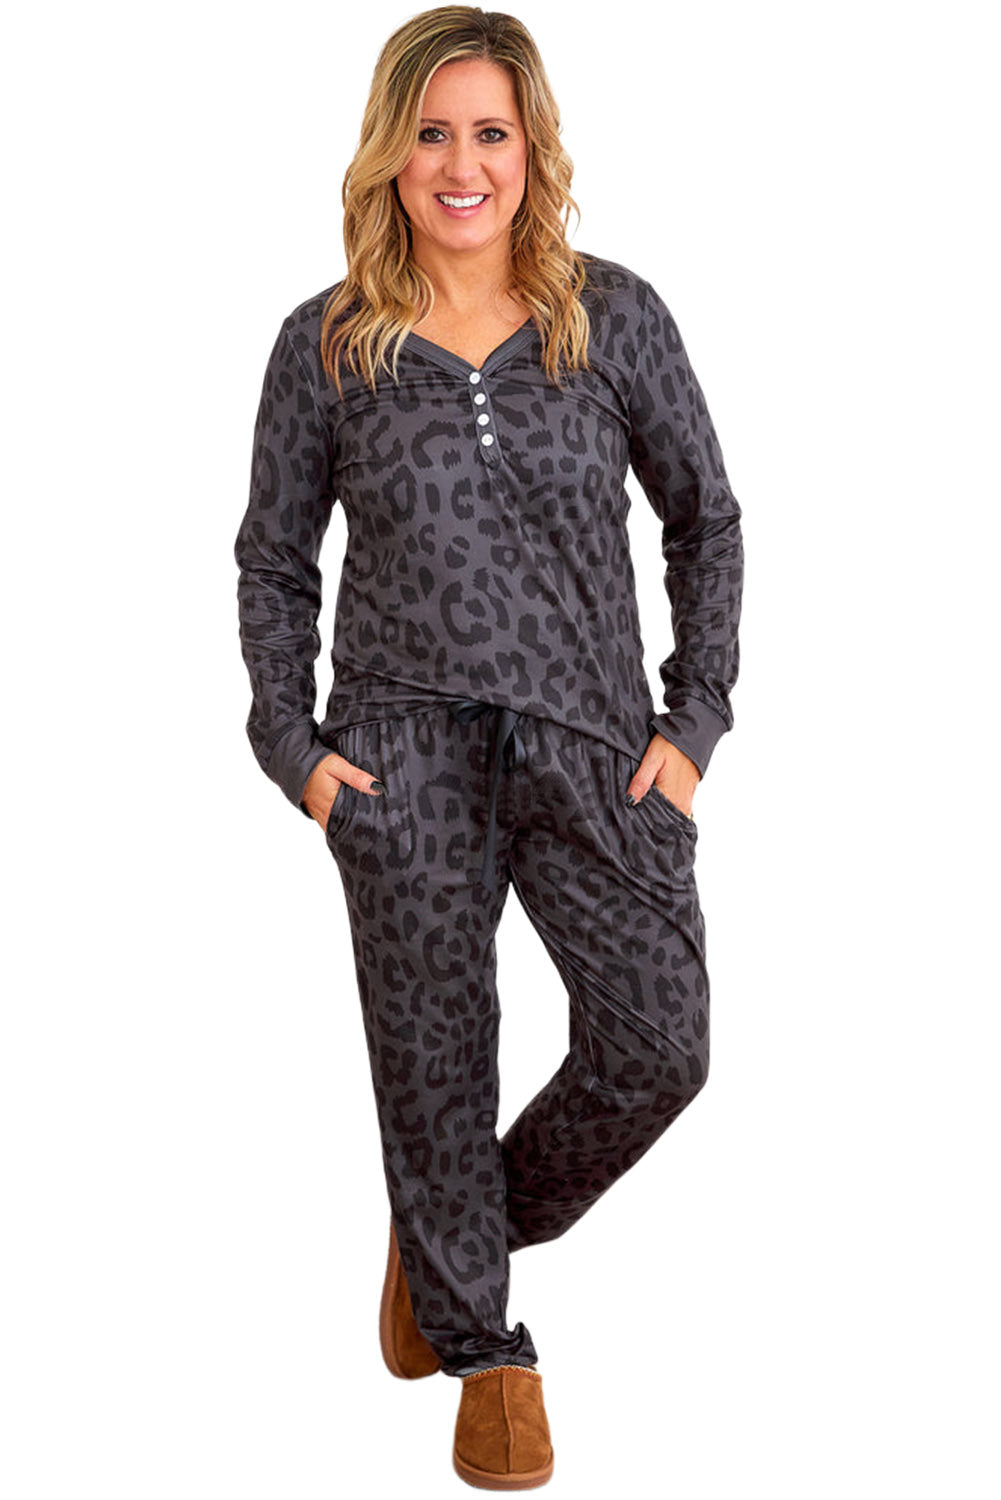 Black Plus Size Leopard Pajamas Set Plus Size JT's Designer Fashion